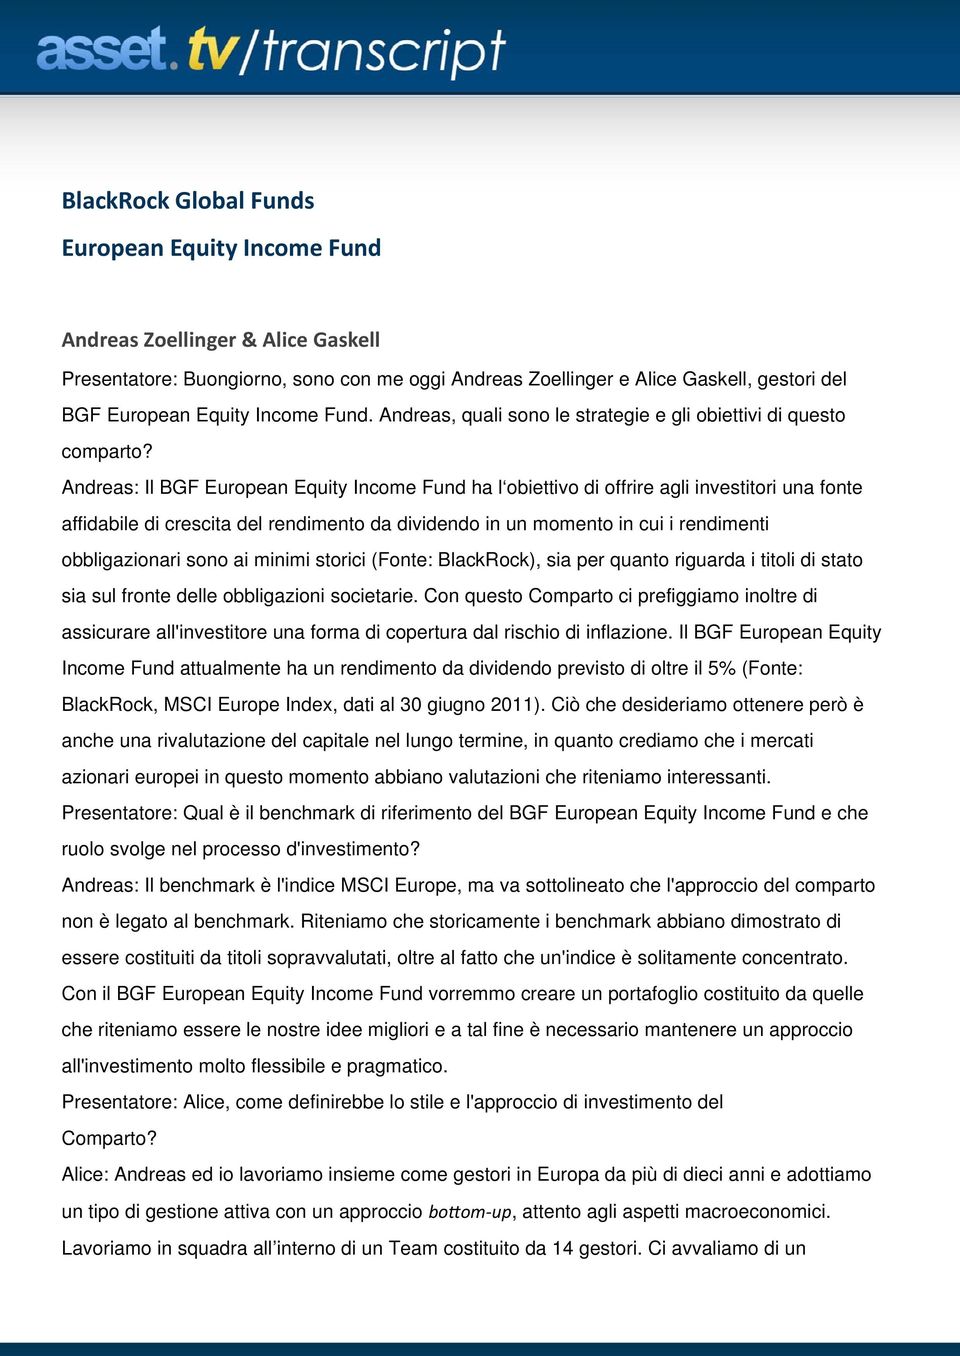 Andreas: Il BGF European Equity Income Fund ha l obiettivo di offrire agli investitori una fonte affidabile di crescita del rendimento da dividendo in un momento in cui i rendimenti obbligazionari